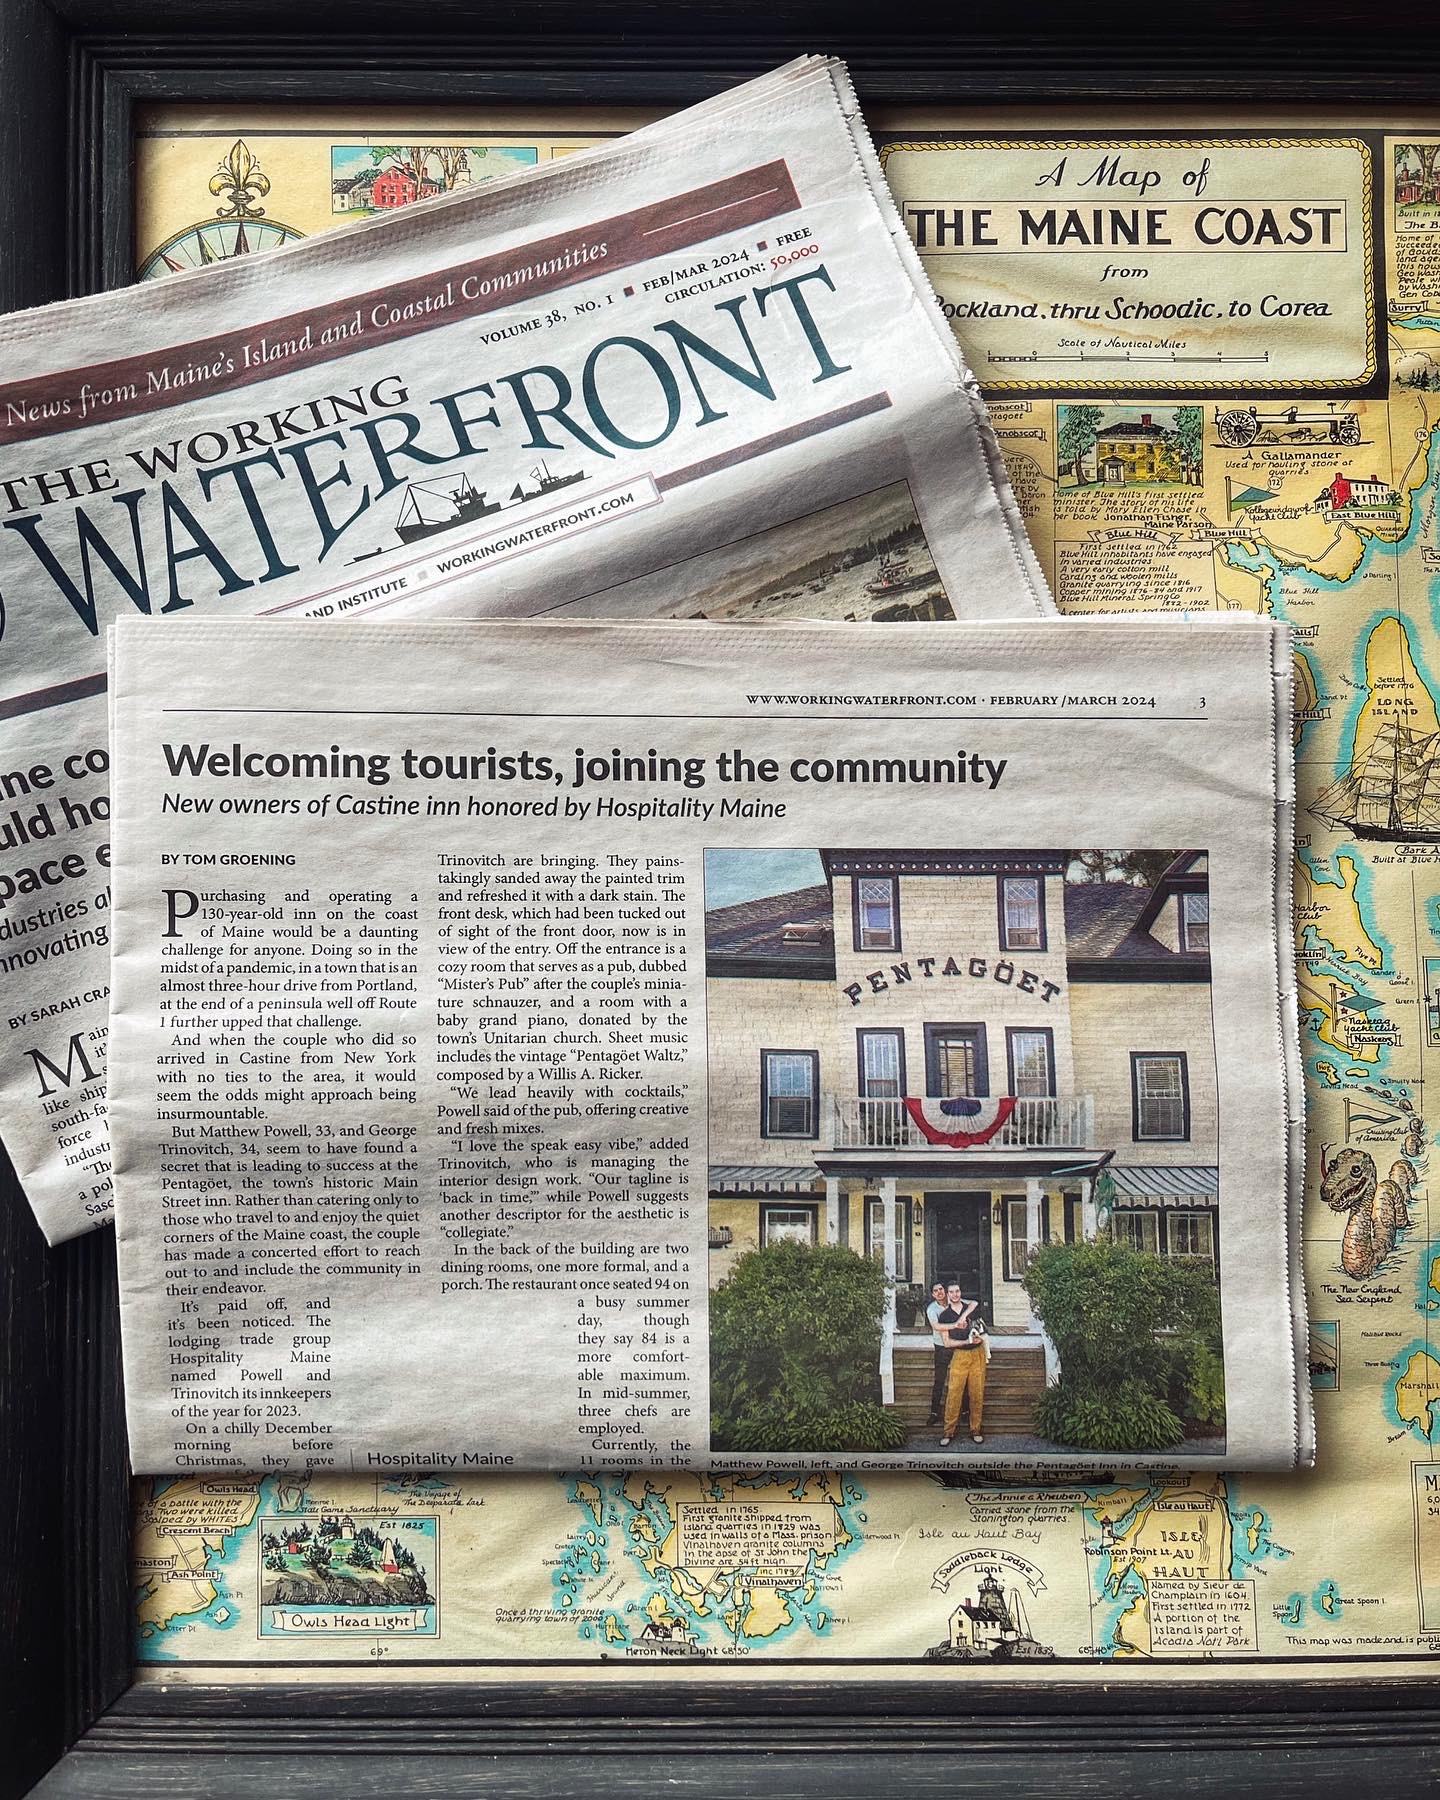 Pentagoet Inn in the Working Waterfront newspaper